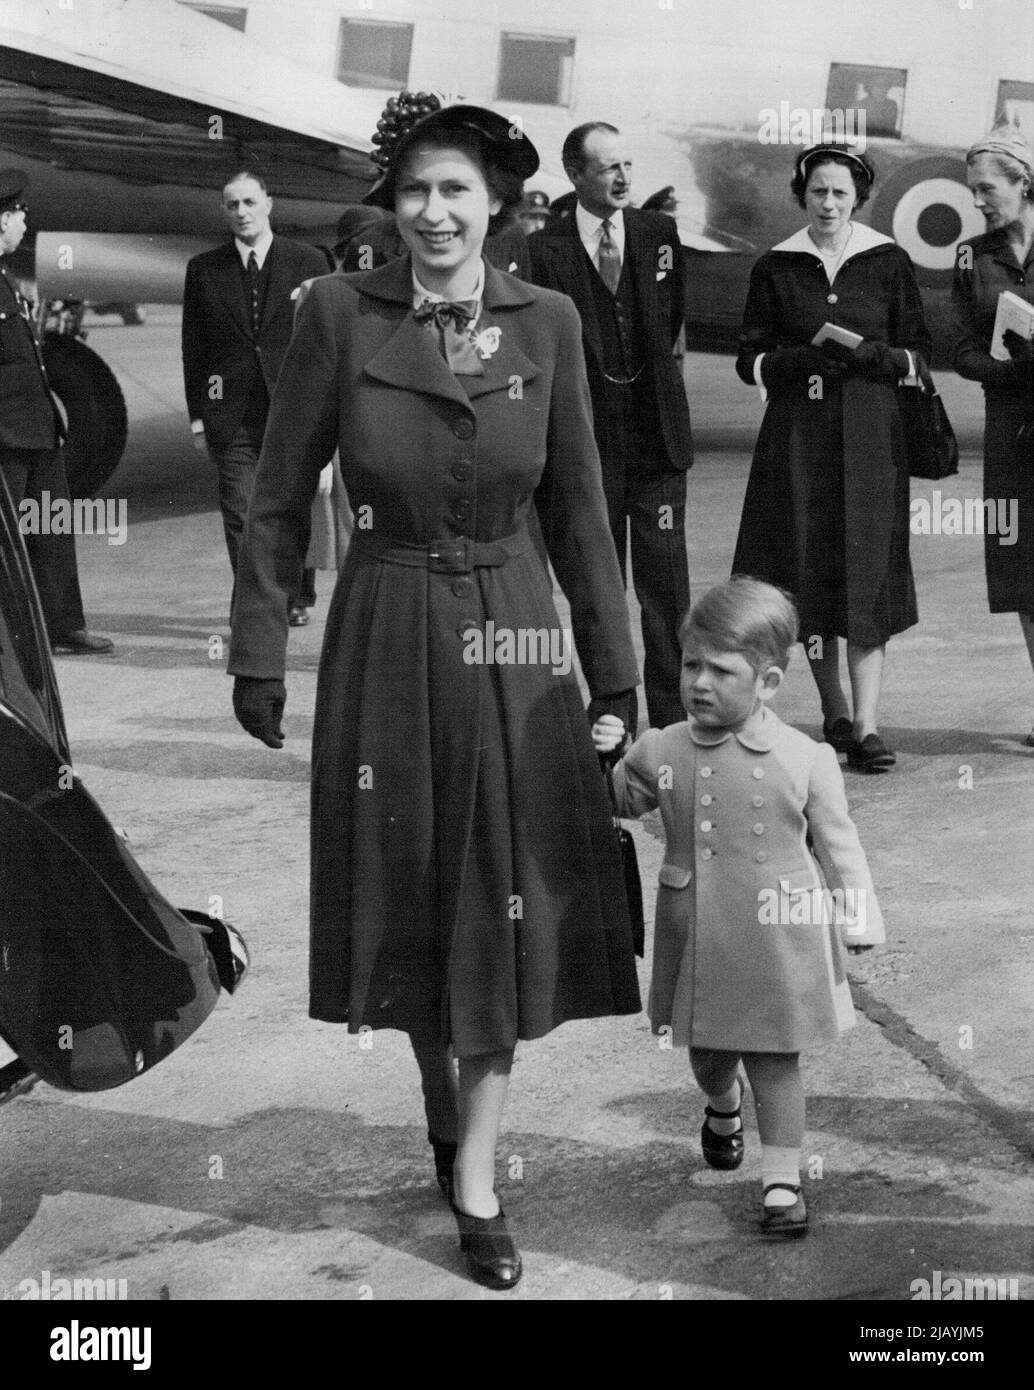 Prinz Charles Willkommen zu Hause für Mutter : Prinz Charles hält die Hand seiner Mutter Prinzessin Elizabeth, als sie zu Fuß zum Royal Auto am Flughafen London heute (Dienstag), als die Prinzessin nach ihrem Besuch nach Hause mit dem Herzog von Edinburgh nach Hause zurückgekehrt. Der Prinz war dort, als das Wikingerflugzeug des King's Flight landete, und er stieg in das Flugzeug, um seine Mutter zu begrüßen. 24. April 1951. (Foto von Reuterphoto). Stockfoto